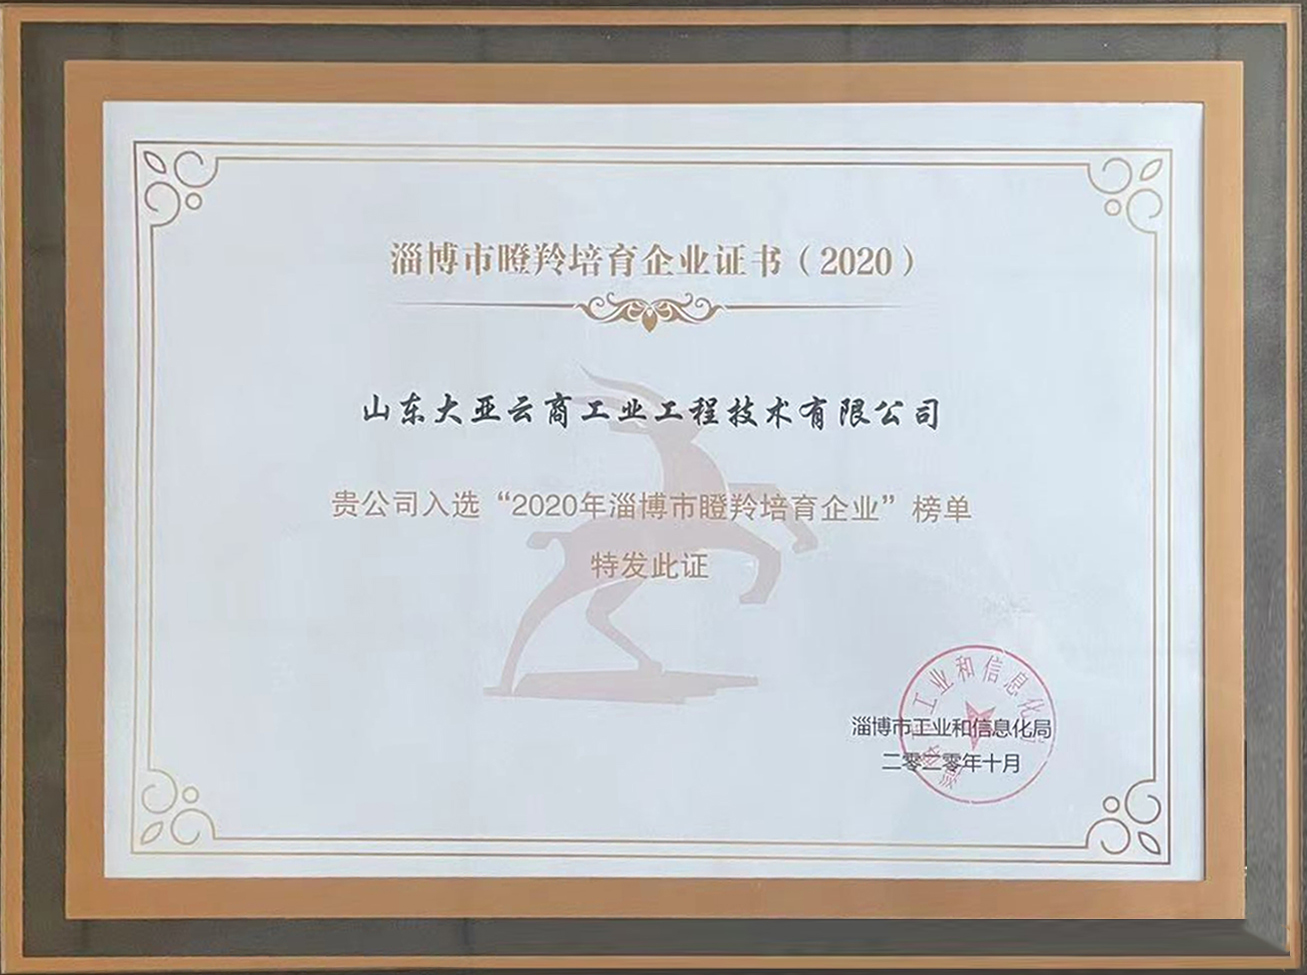 2020榮獲“淄博市瞪羚培育企業證書”